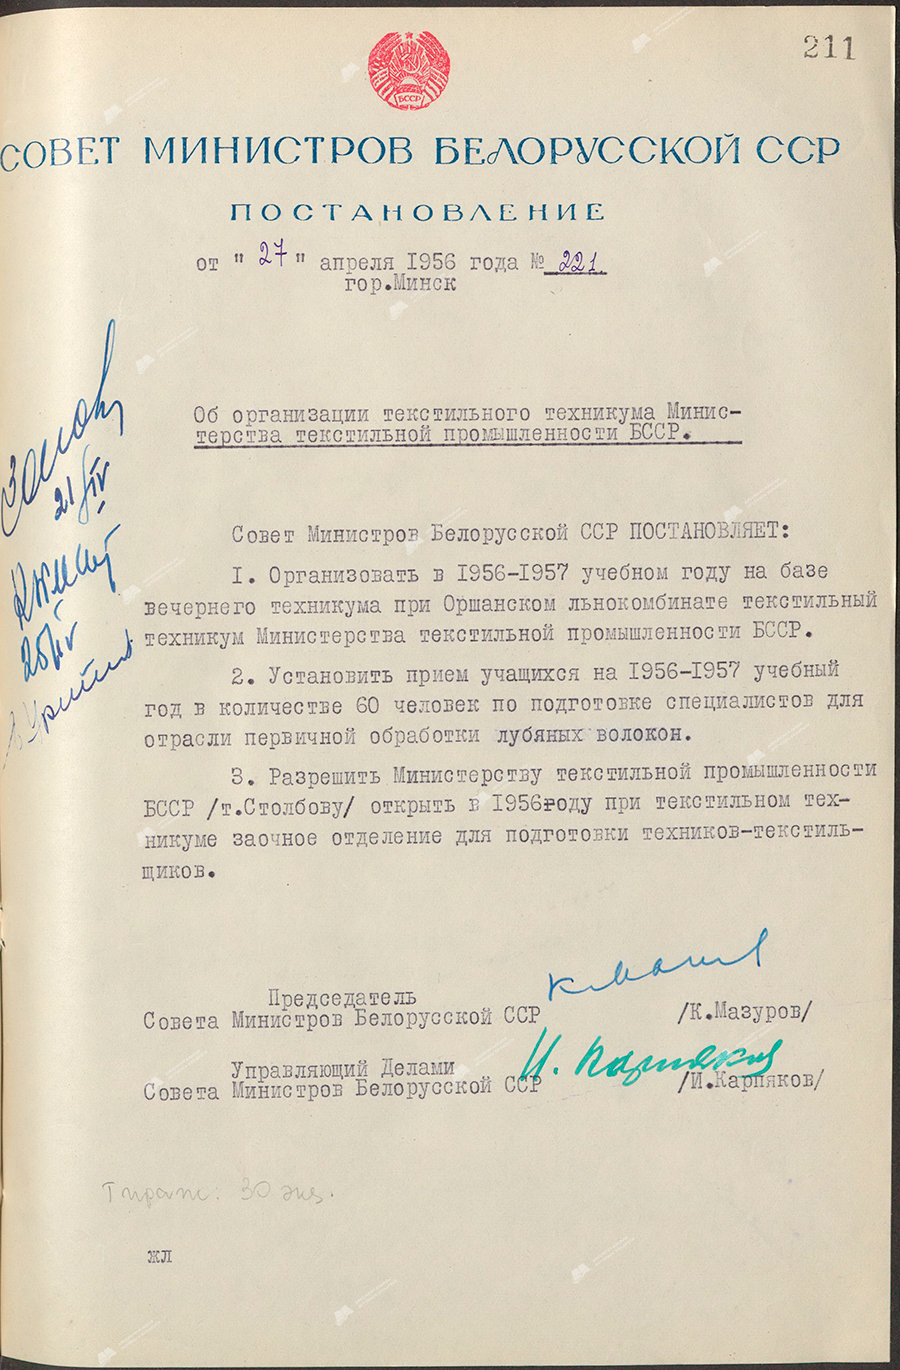 Beschluss Nr. 221 des Ministerrats der Weißrussischen SSR «Über die Organisation der Textilfachschule des Ministeriums für Textilindustrie der BSSR»-с. 0